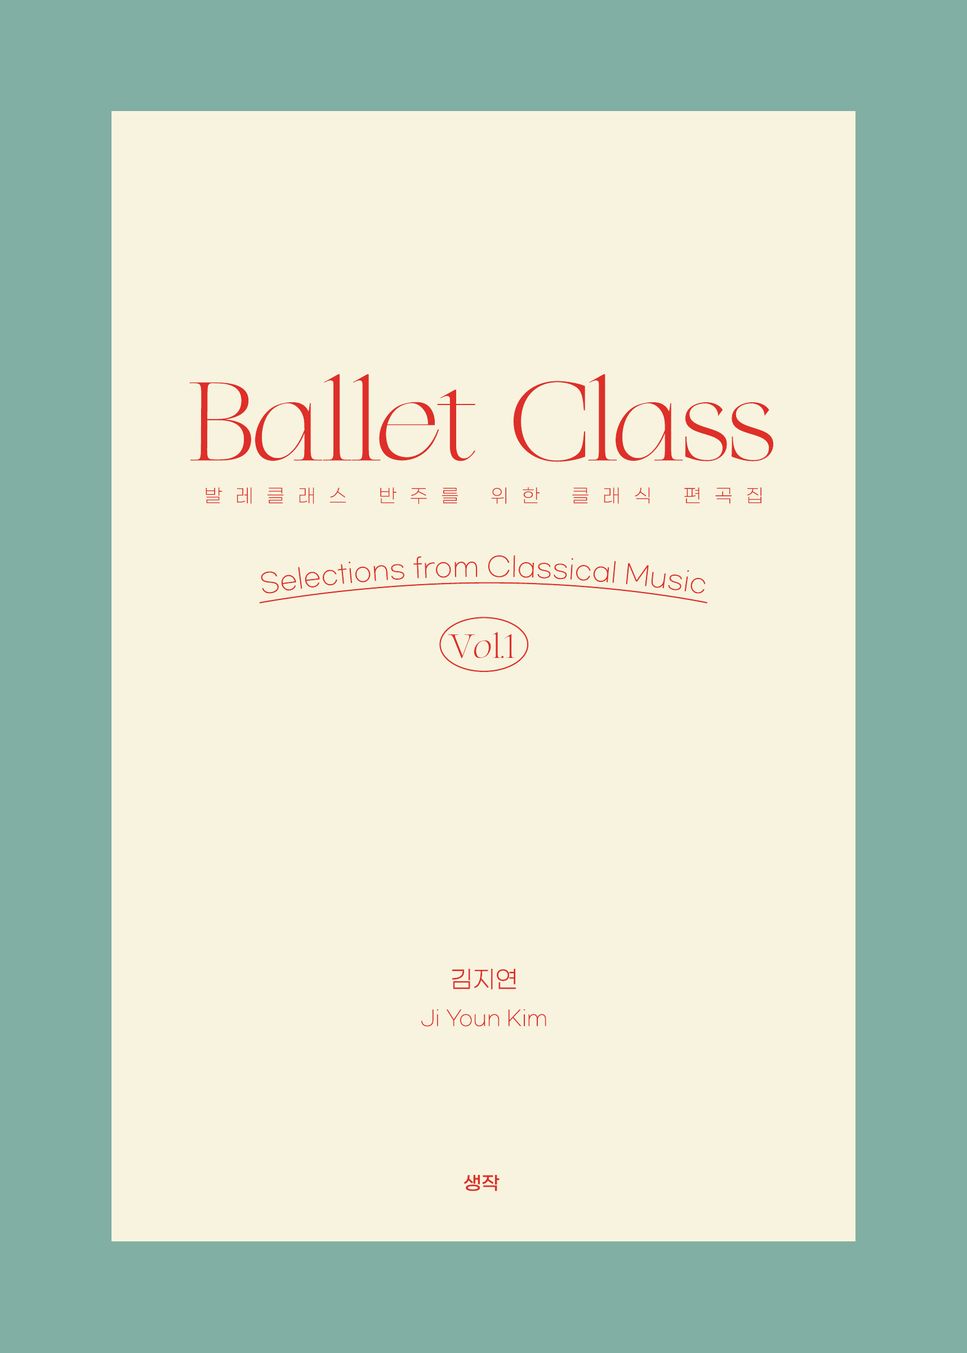 Ji Youn Kim - Ballet Class vol. 1 - 6. Jeté 1